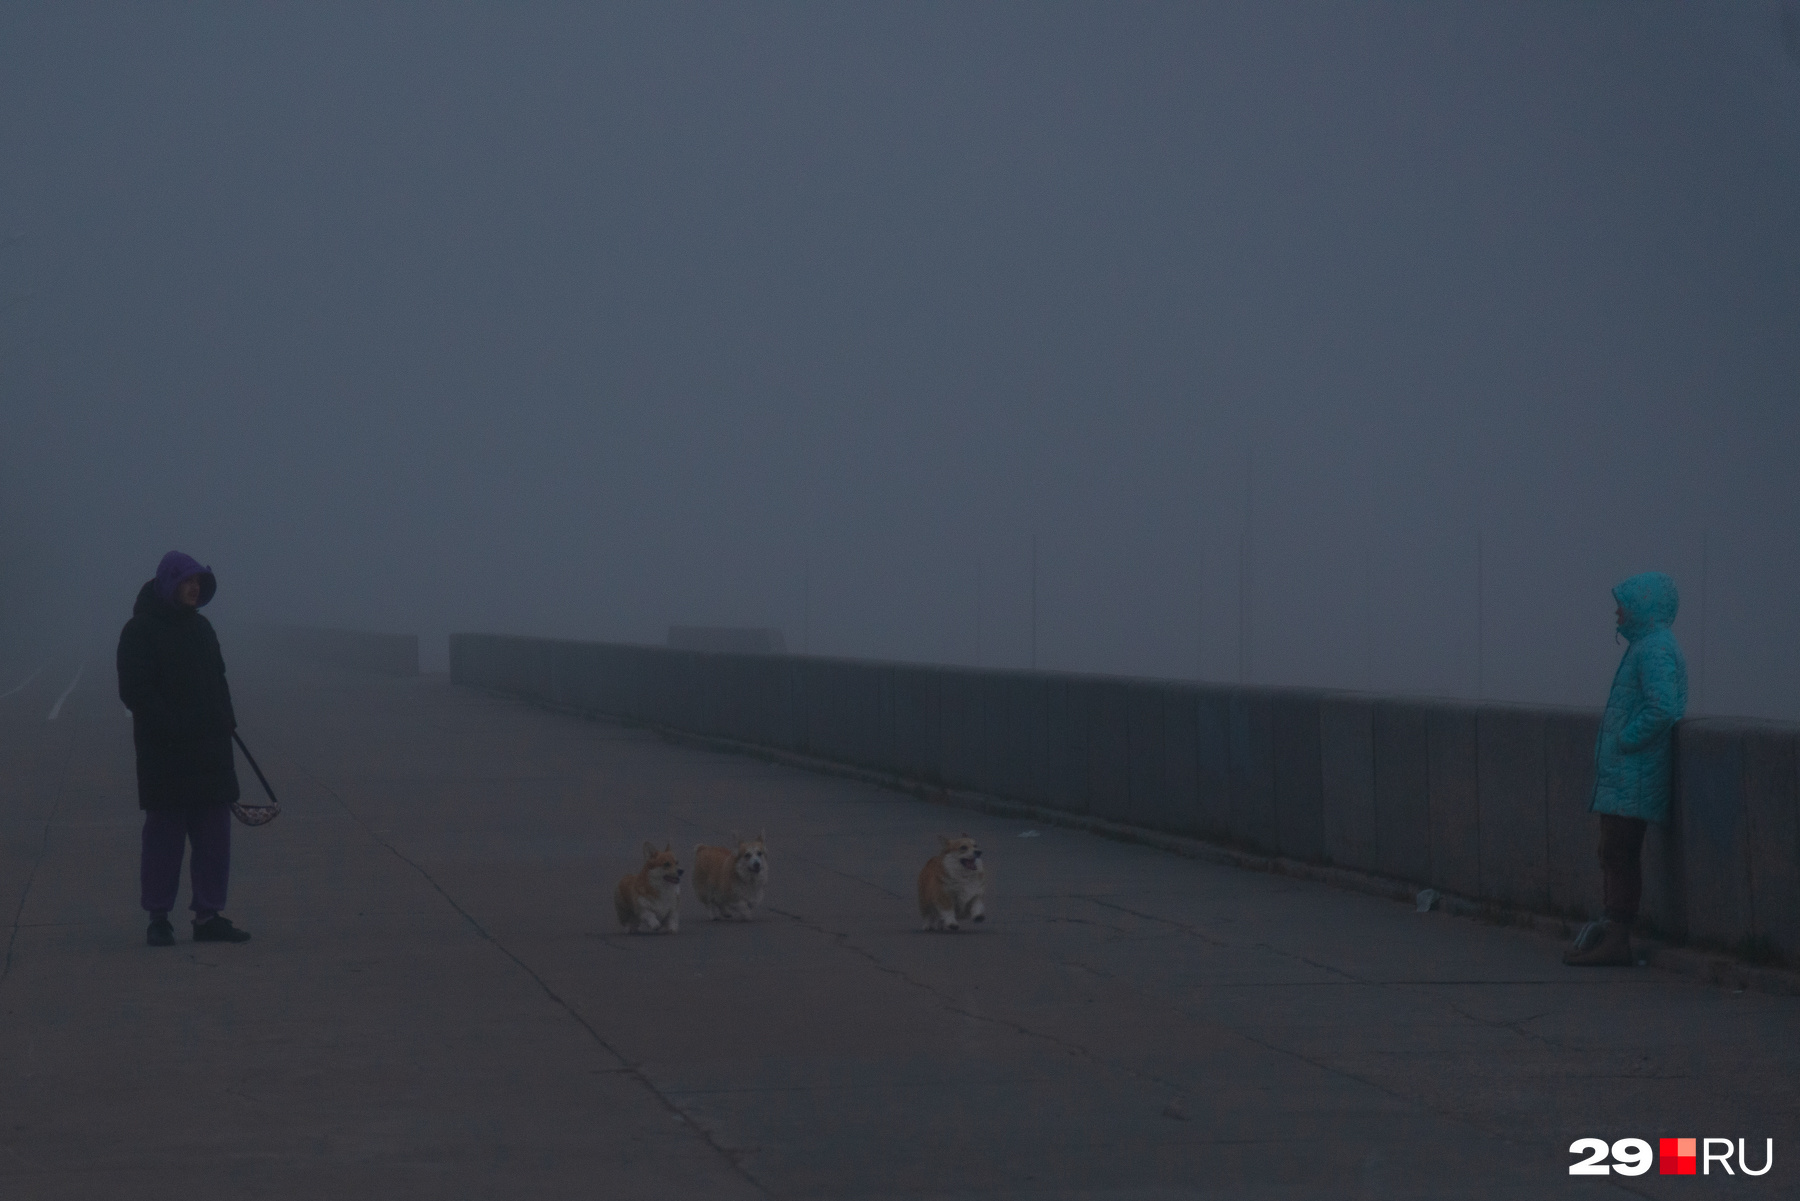 Ну а эти красавчики всё радуются: что им туман, лишь бы на прогулку вывели